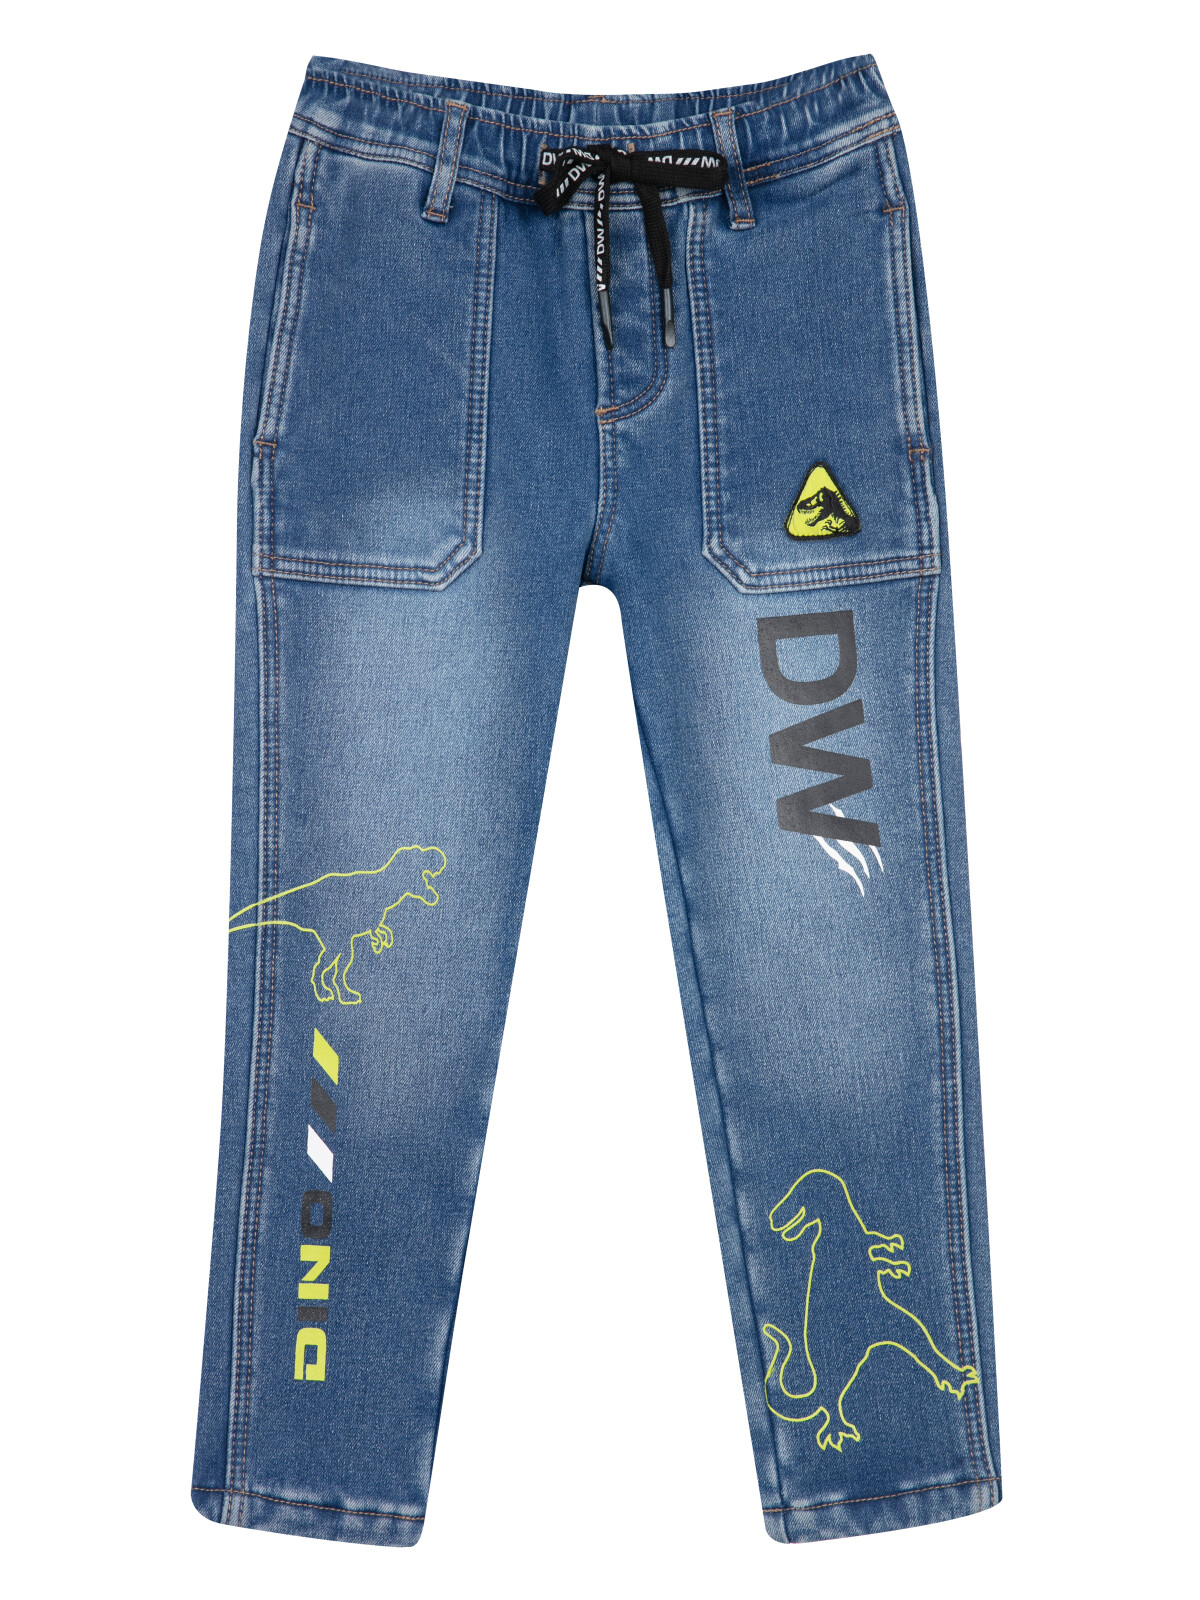 Брюки текстильные джинсовые утепленные флисом для мальчиков PlayToday, тёмно-синий, 104